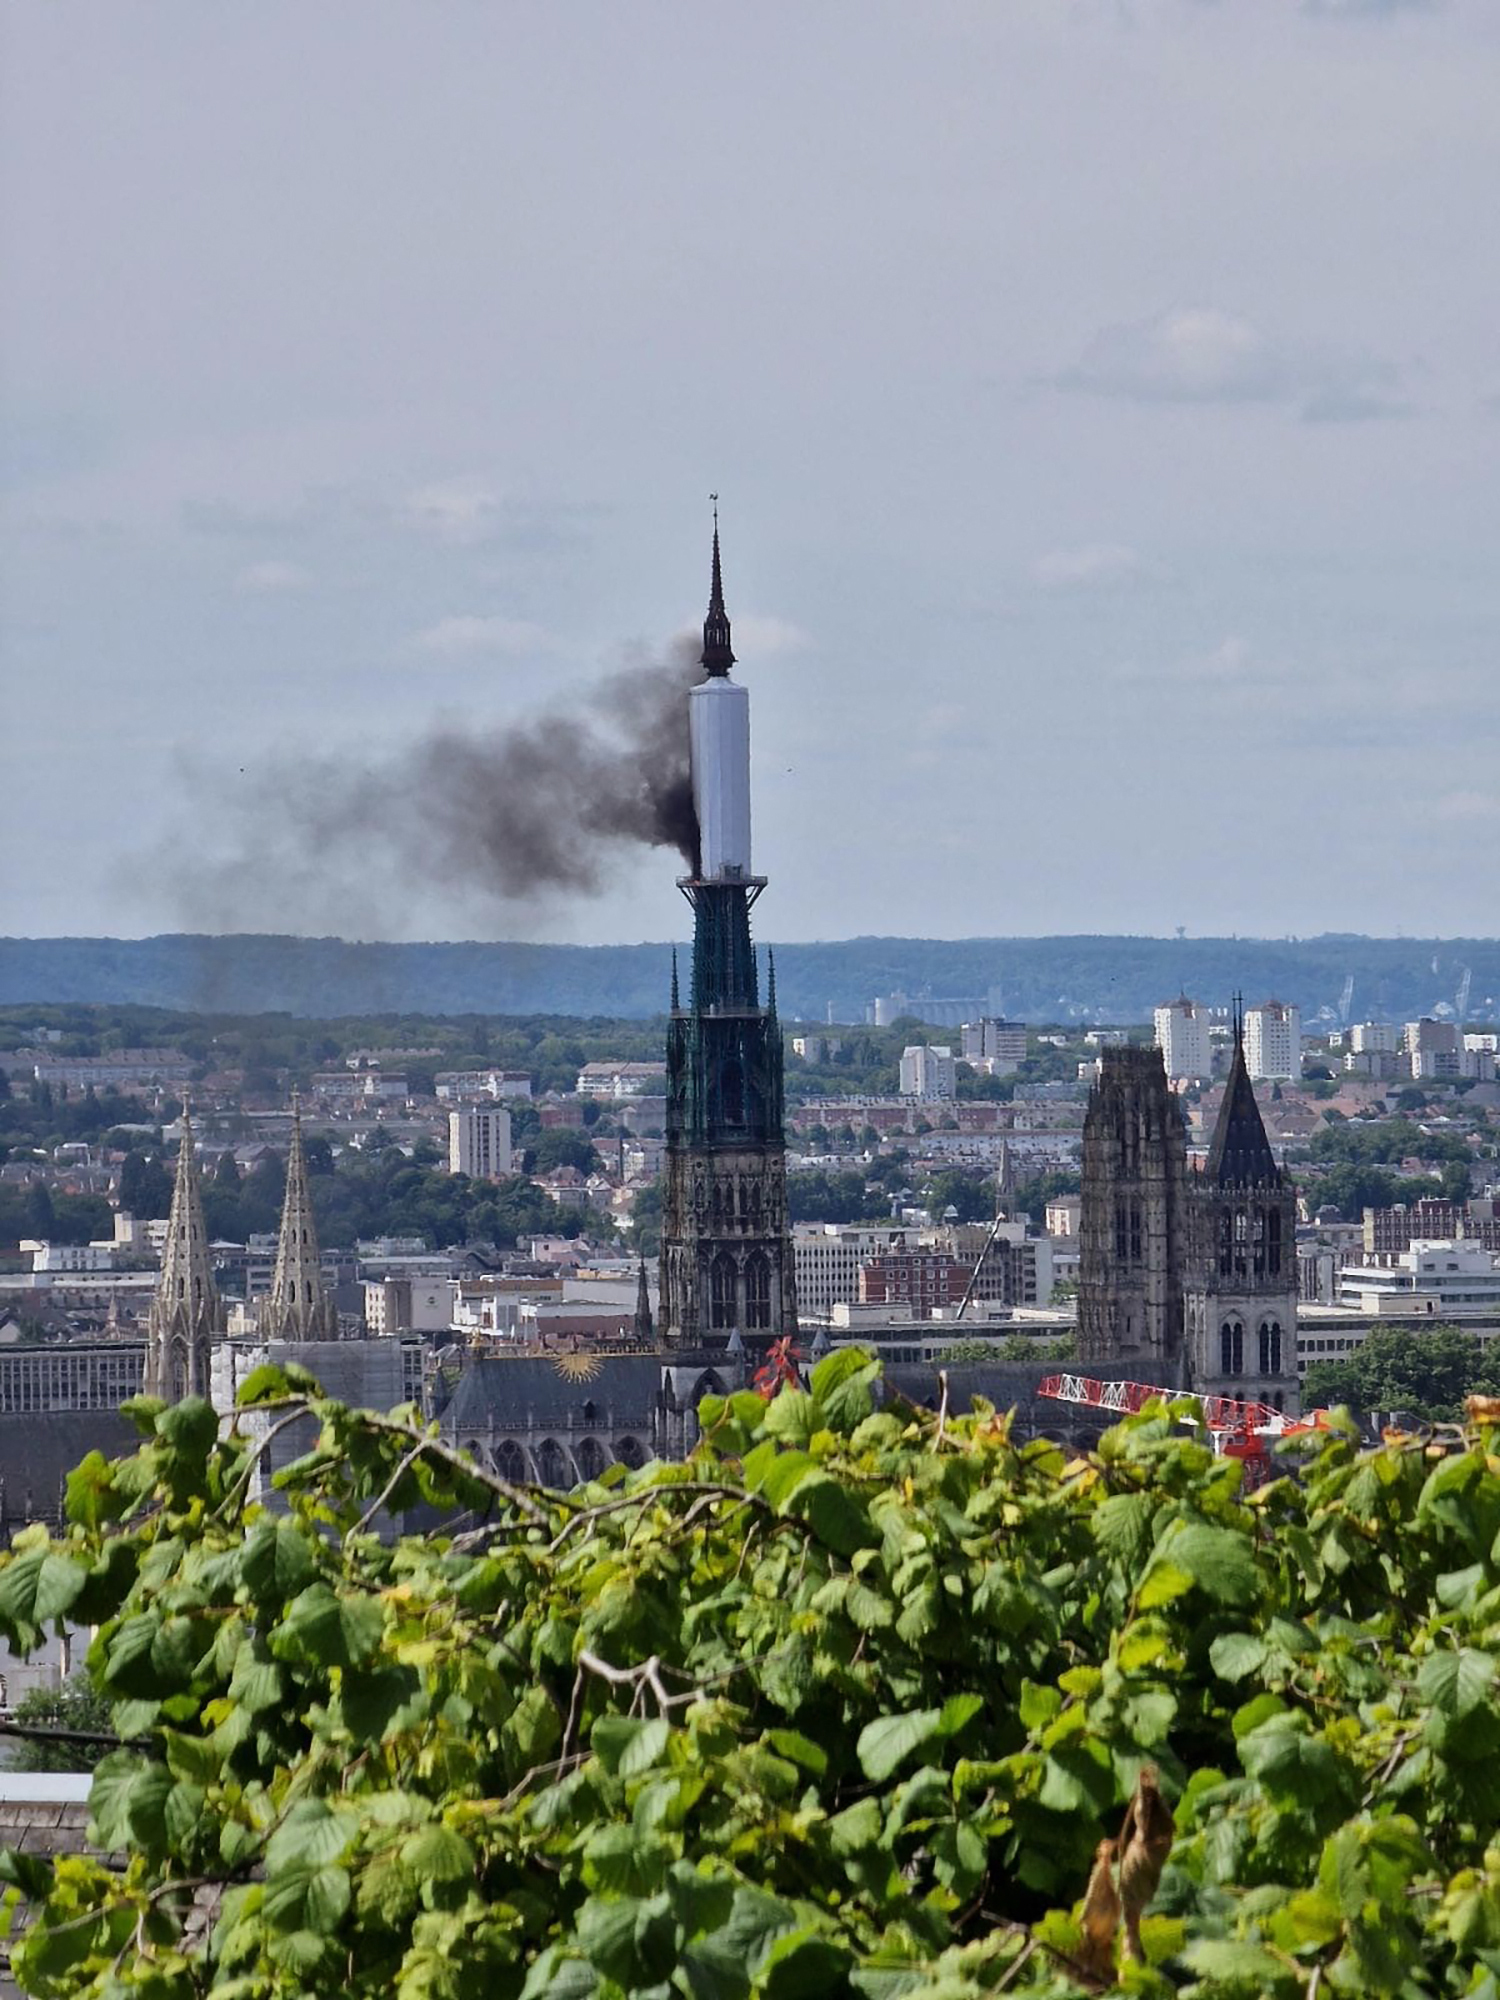 Vom Turm der Kathedrale von Rouen steigt eine Rauchwolke auf.